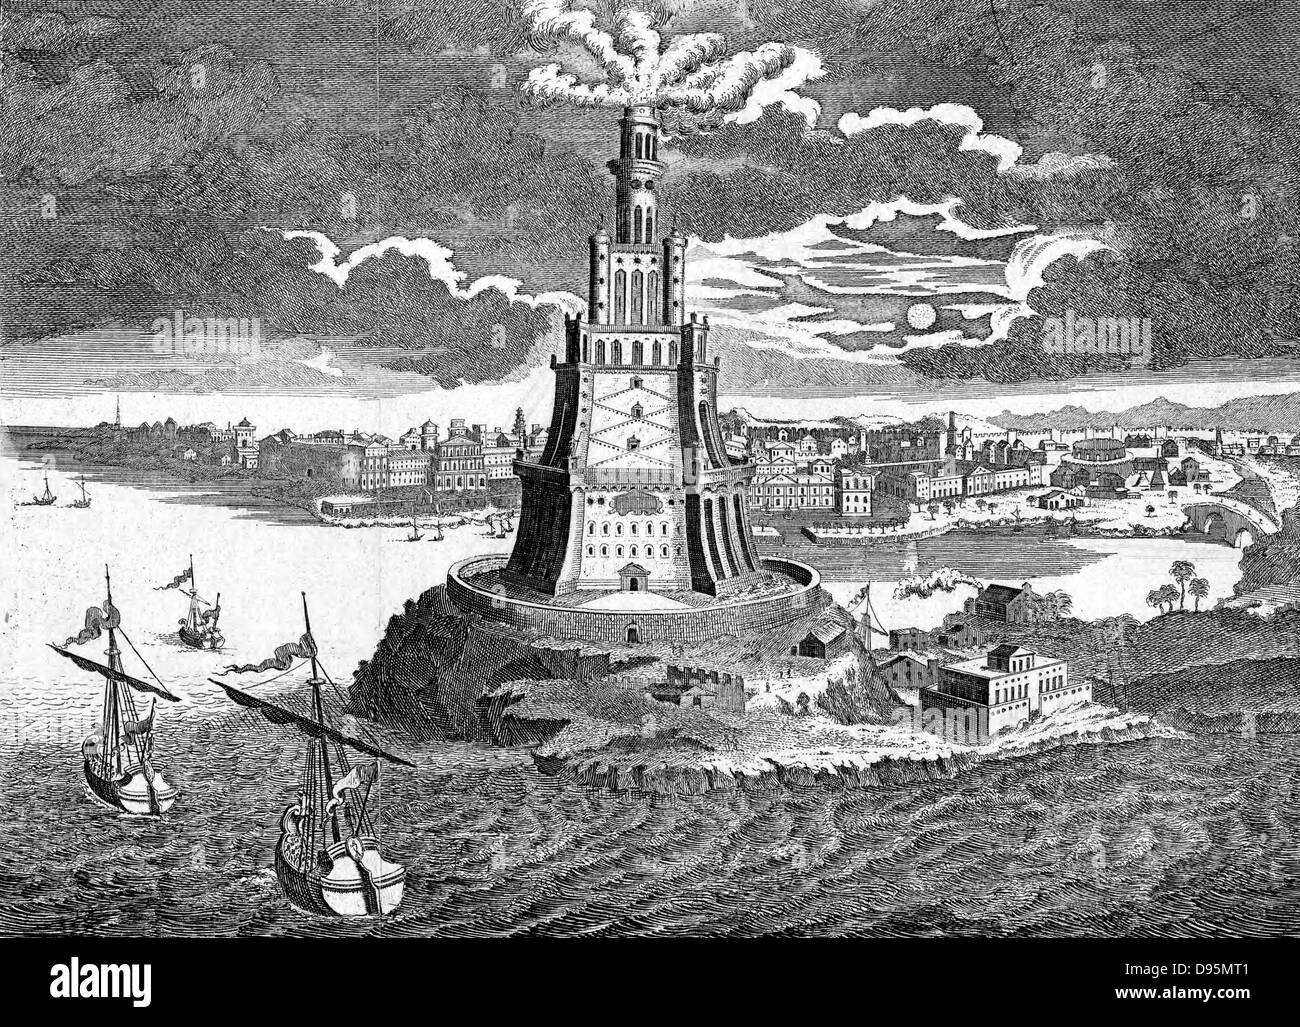 Der große Pharos (Leuchtturm) erbaute 280 v. Chr. auf der Insel Pharos in der Bucht von Alexandria, Ägypten. 18. Jahrhundert Gravur Stockfoto